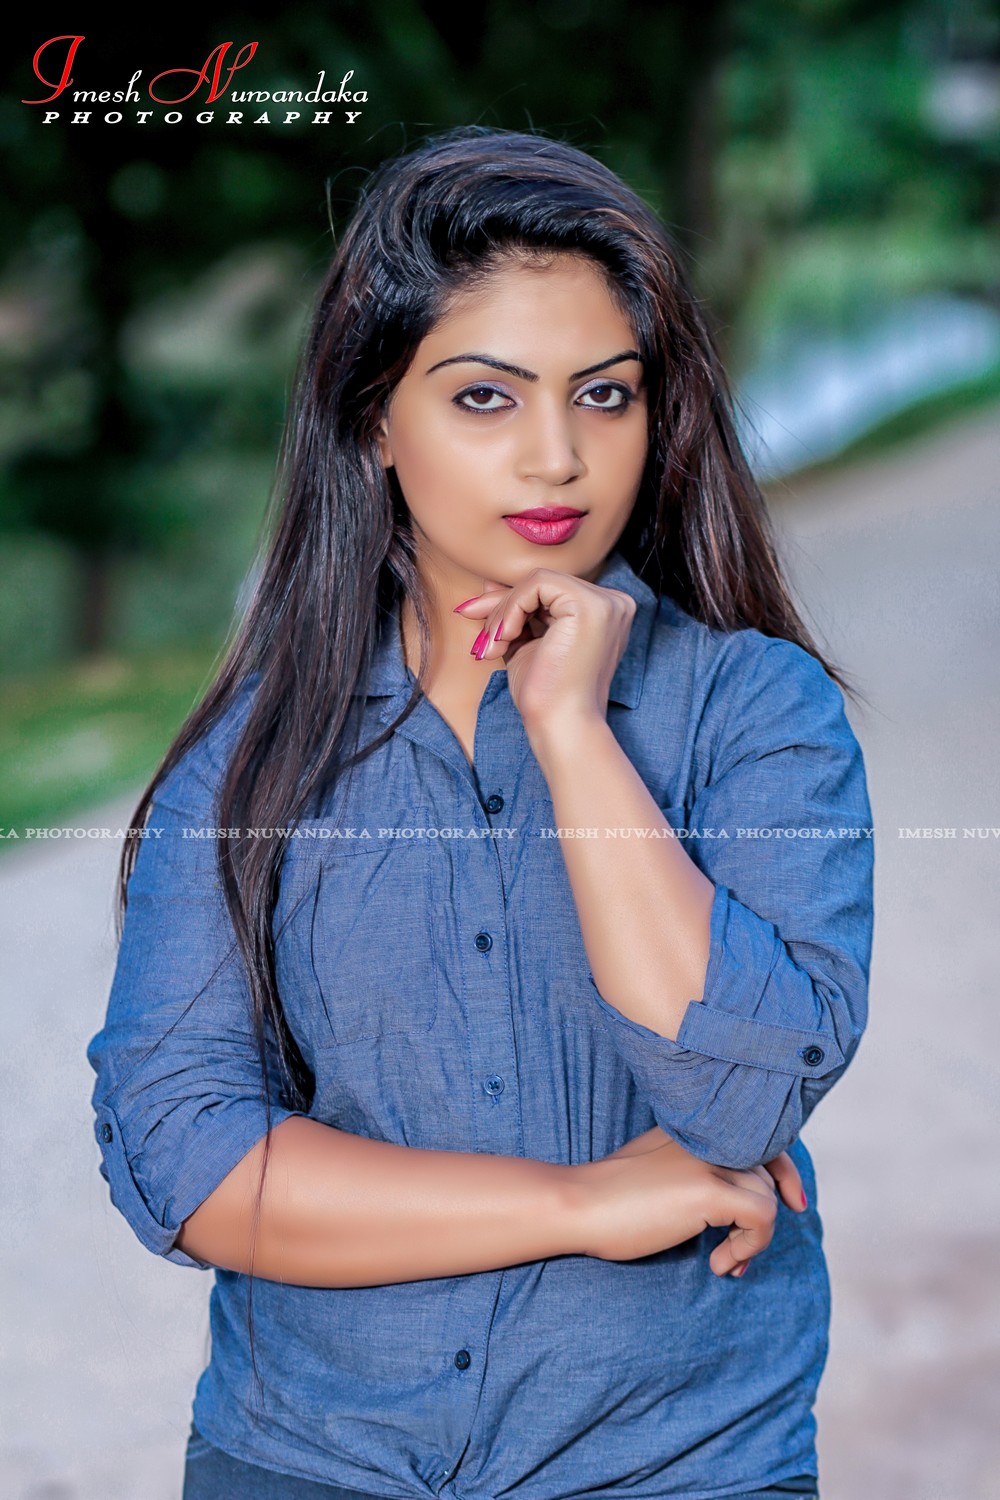 Prasanga New Photoshoot - Srilanka Models Zone 24x7